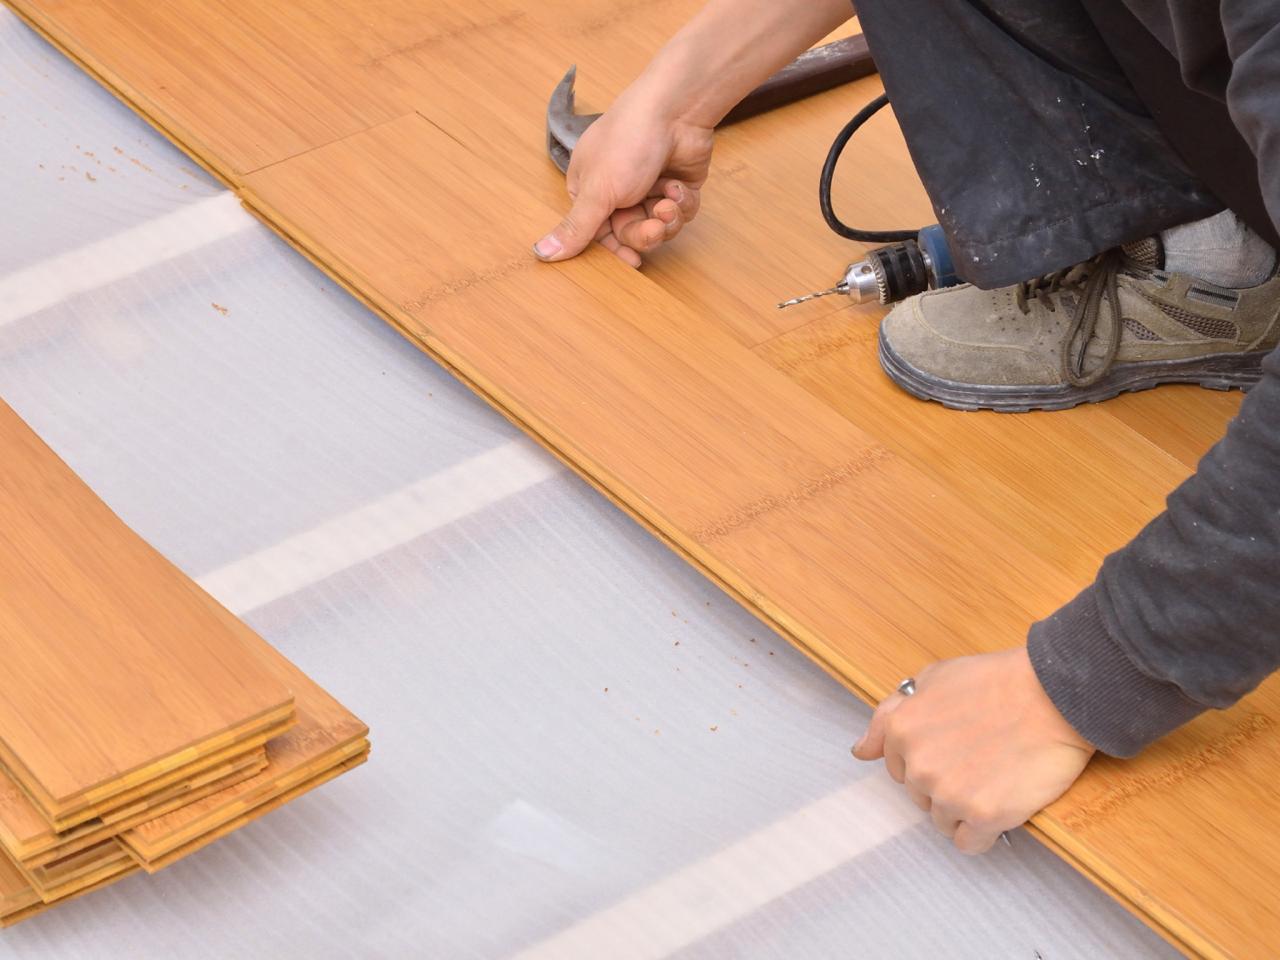 Bamboo Floor Installation Diy, Tools Needed To Install Floating Hardwood Floor